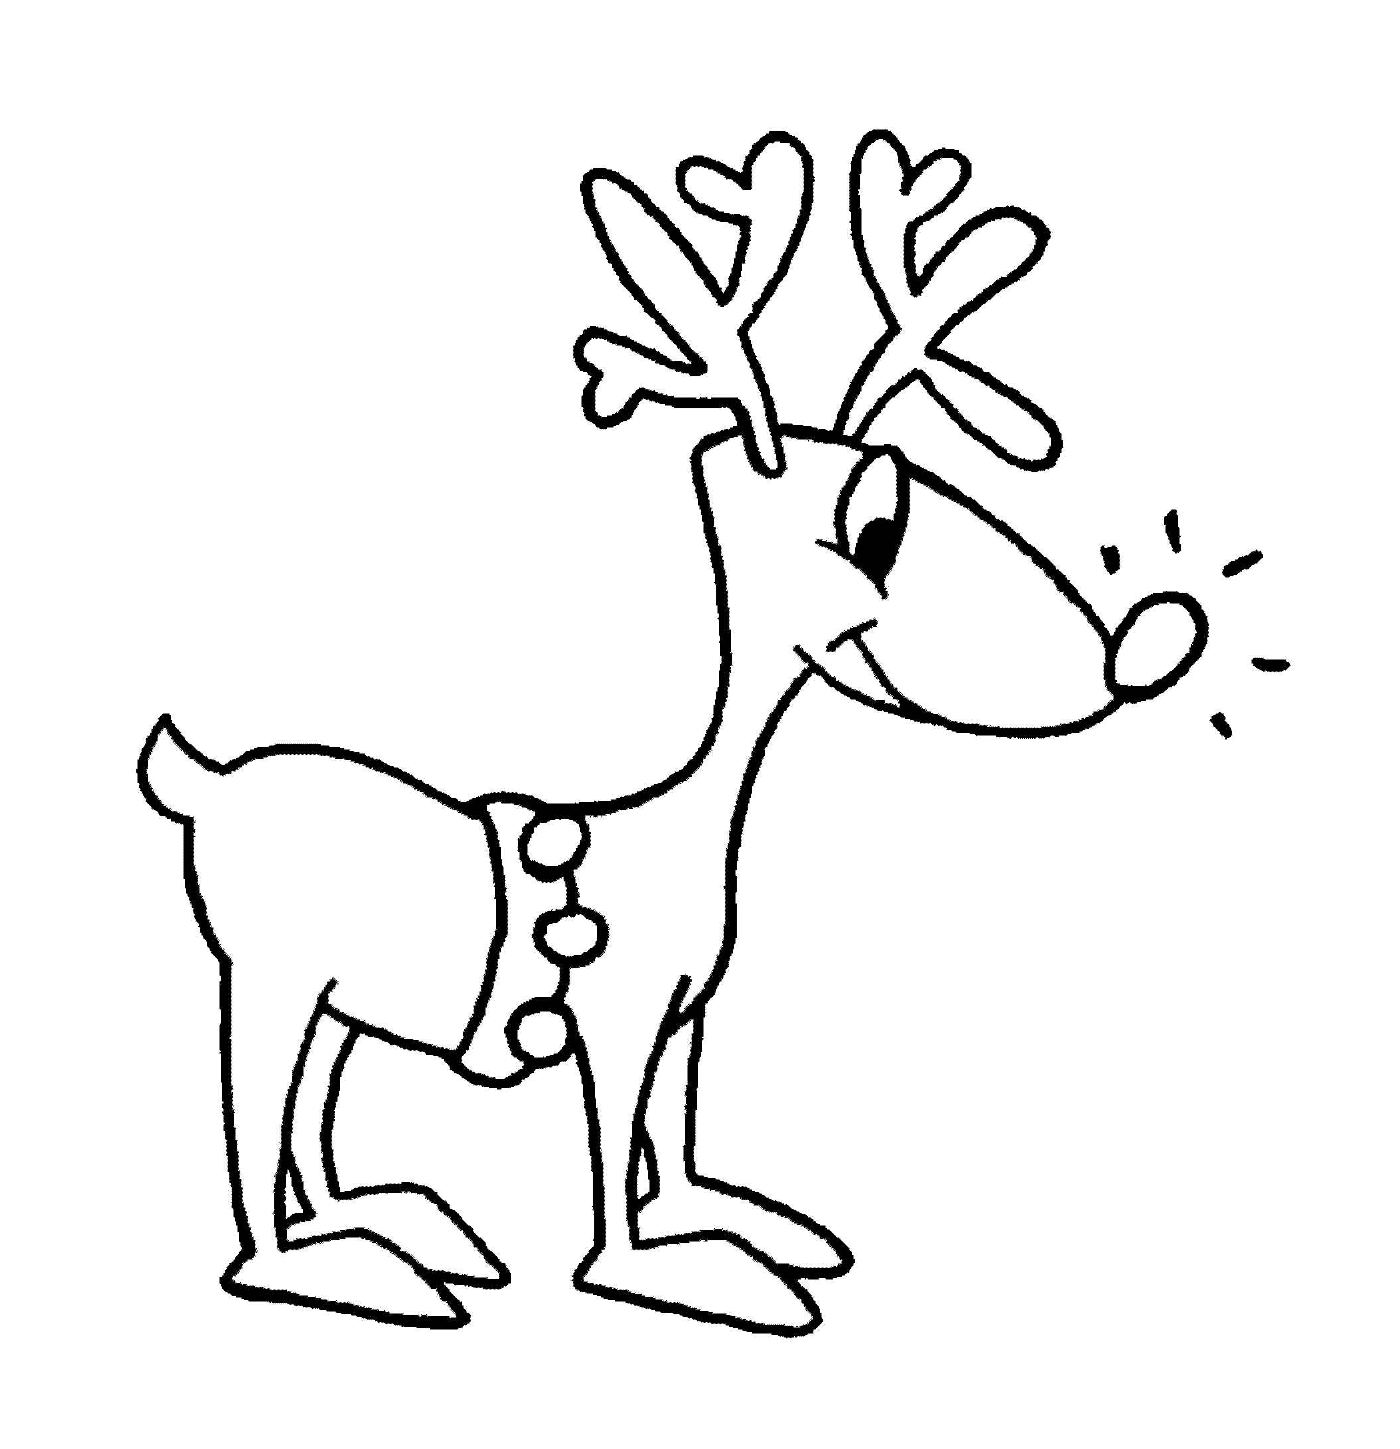  简单的圣诞节带驯鹿 